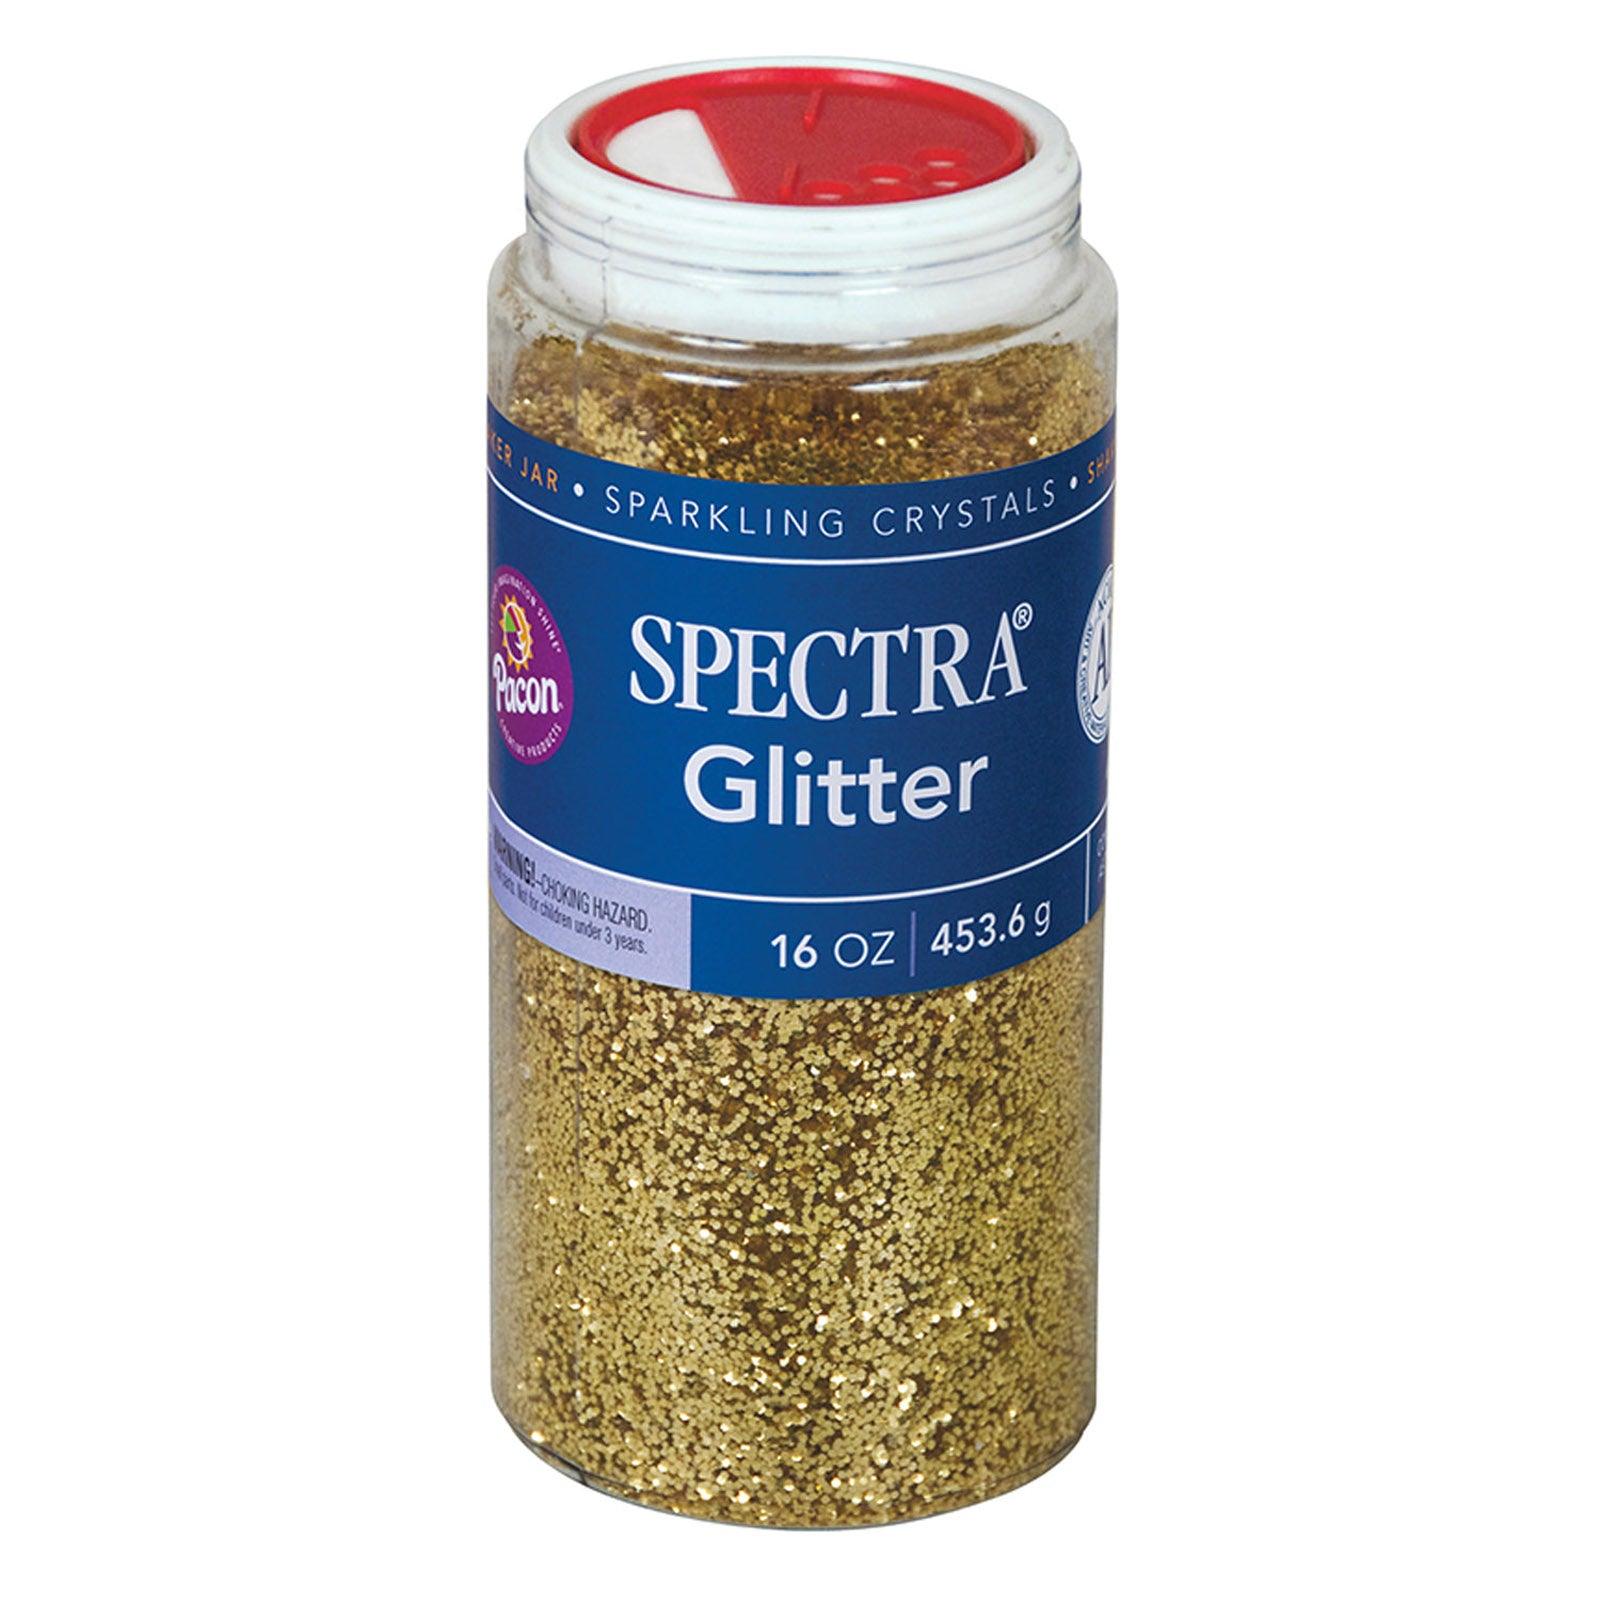 Glitter, Gold, 1 lb. Per Jar, 2 Jars - Loomini